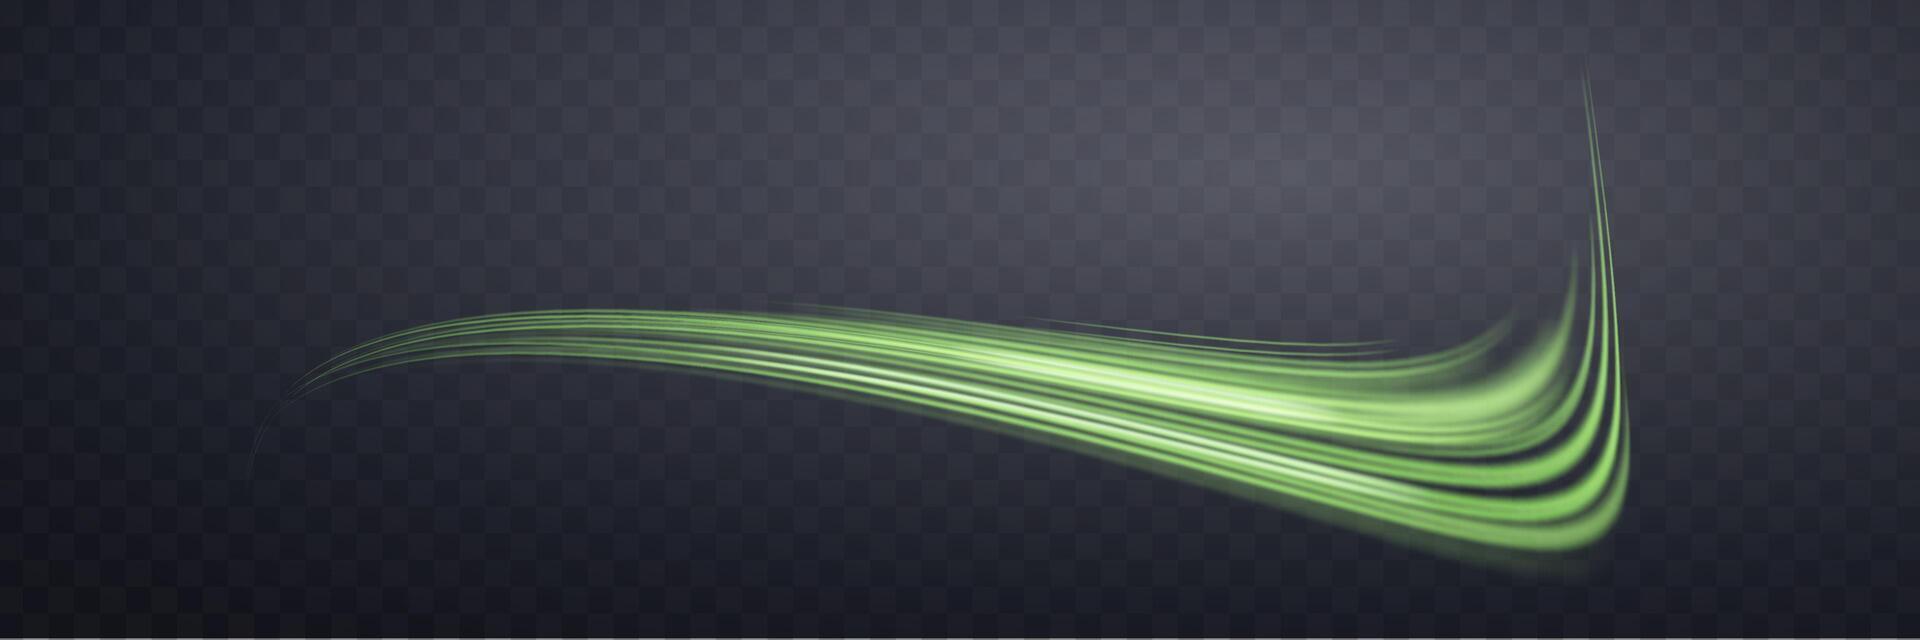 lysande grön rader. neon realistisk energi fart. abstrakt ljus effekt på en mörk bakgrund. vektor illustration.